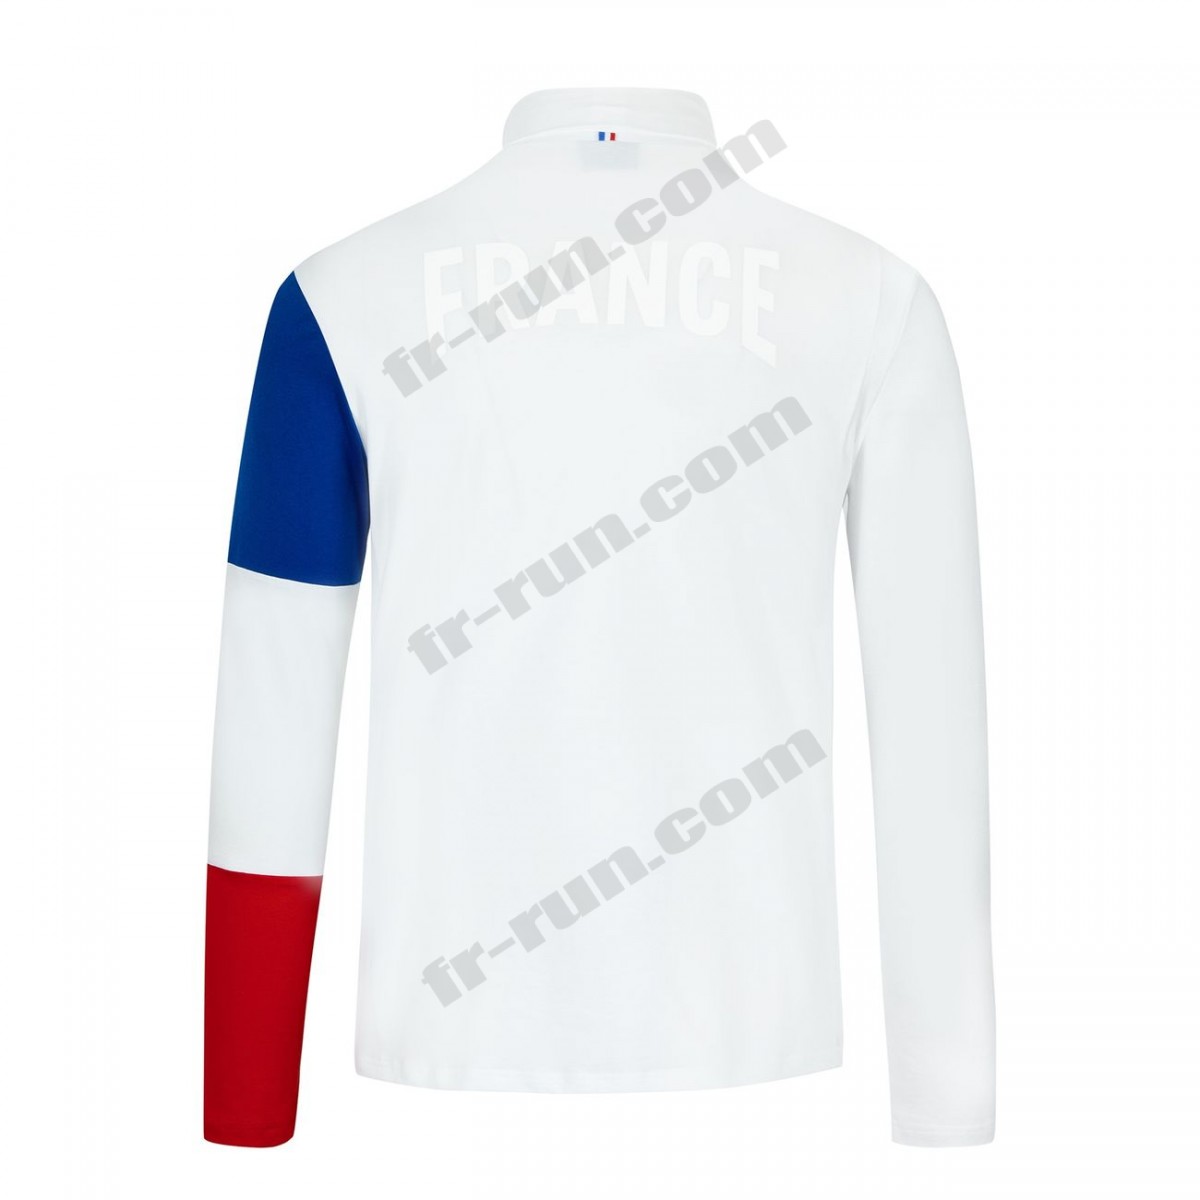 Le Coq Sportif/running adulte LE COQ SPORTIF T-shirt manches longues Équipe de France Olympique Unisexe √ Nouveau style √ Soldes - -6